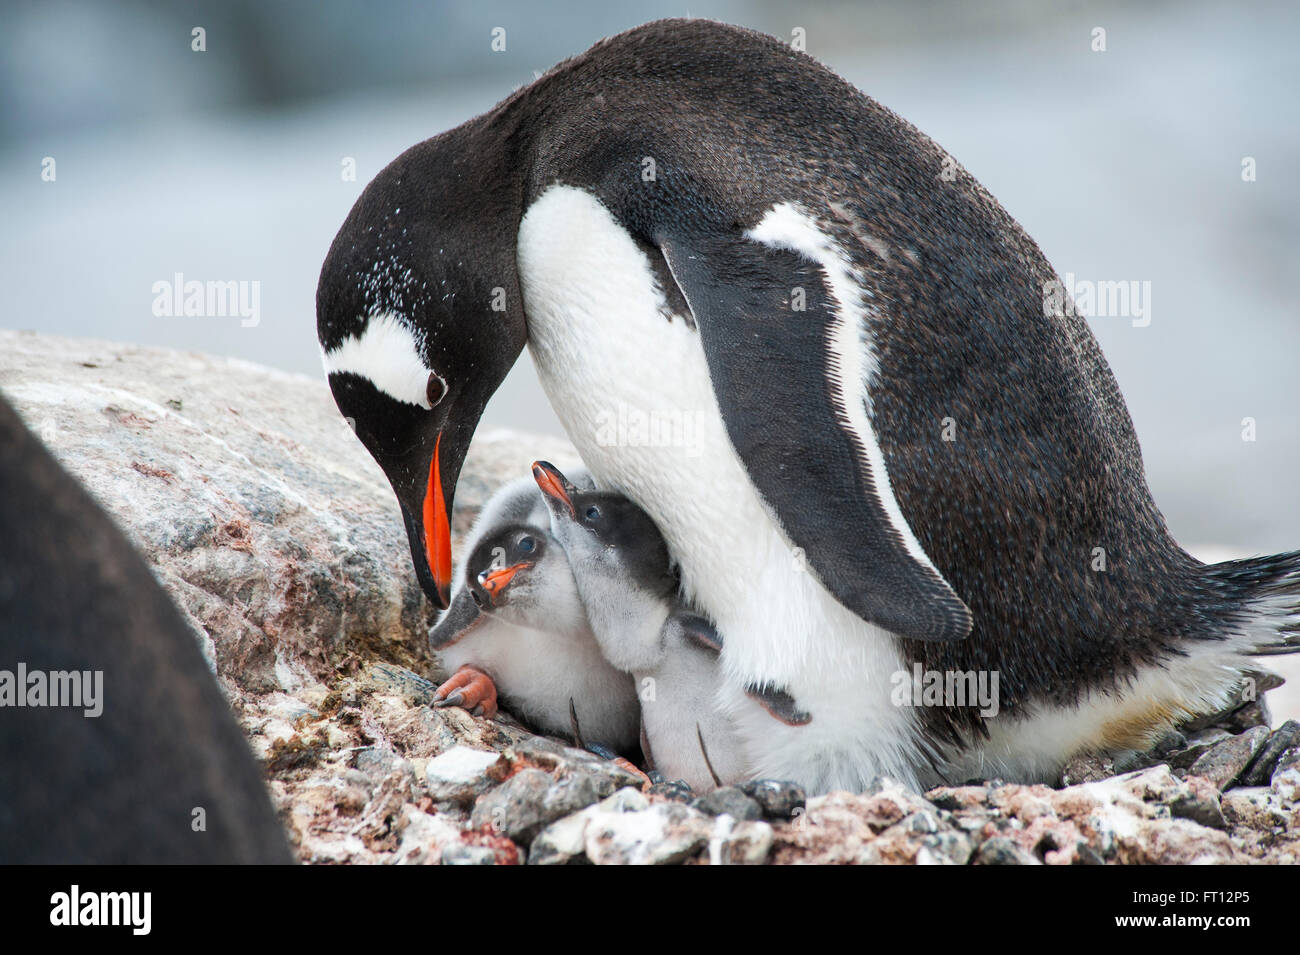 Un pinguino papua Pygoscelis papua madre alimentando i suoi due pulcini, Port Lockroy, isola Wiencke, Antartide Foto Stock